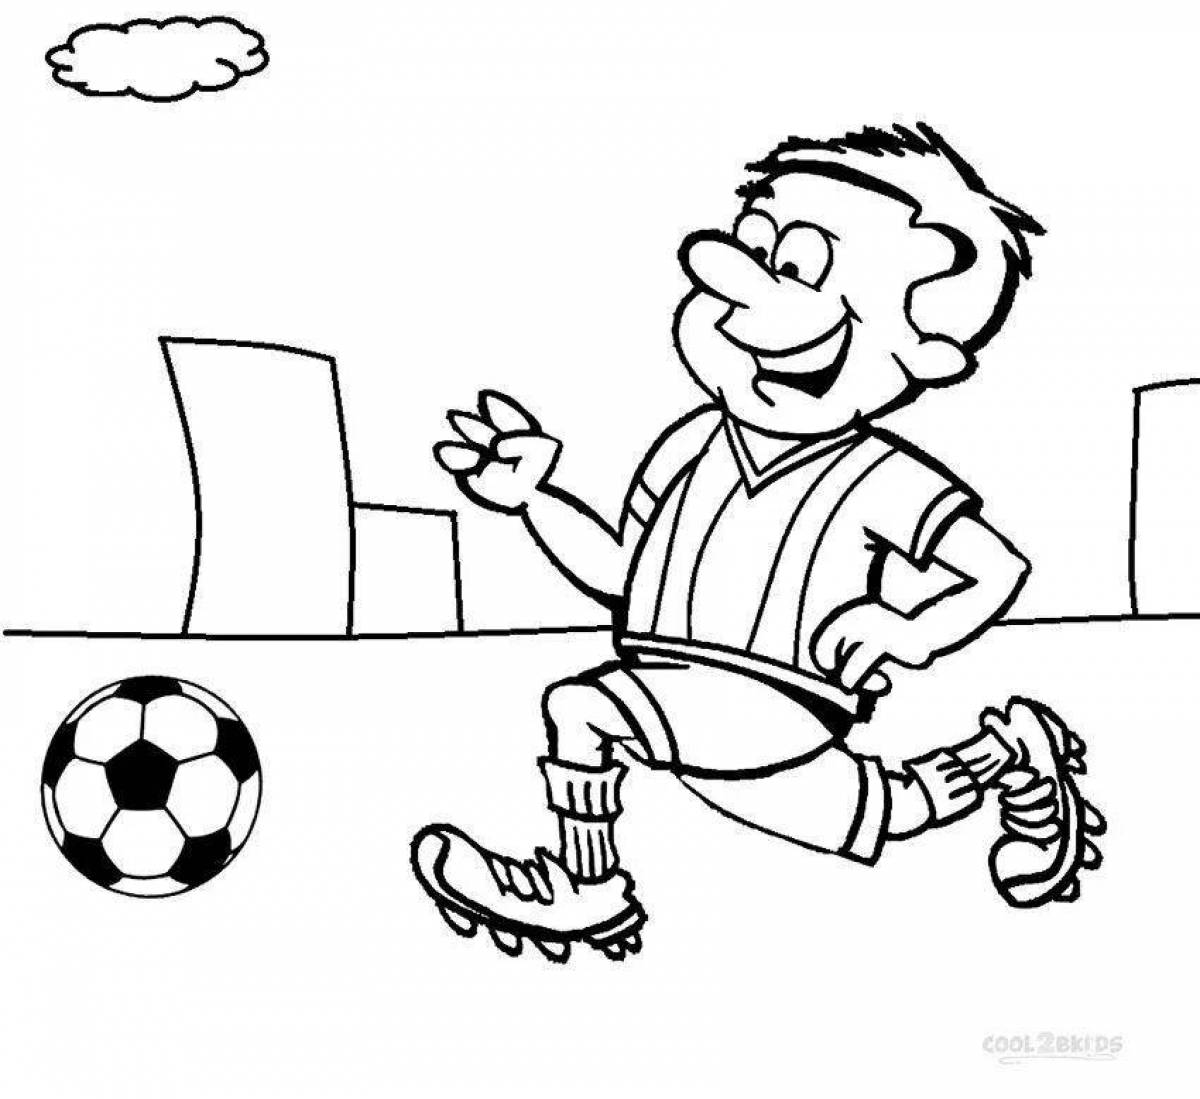 Анимированная страница-раскраска футболиста для детей